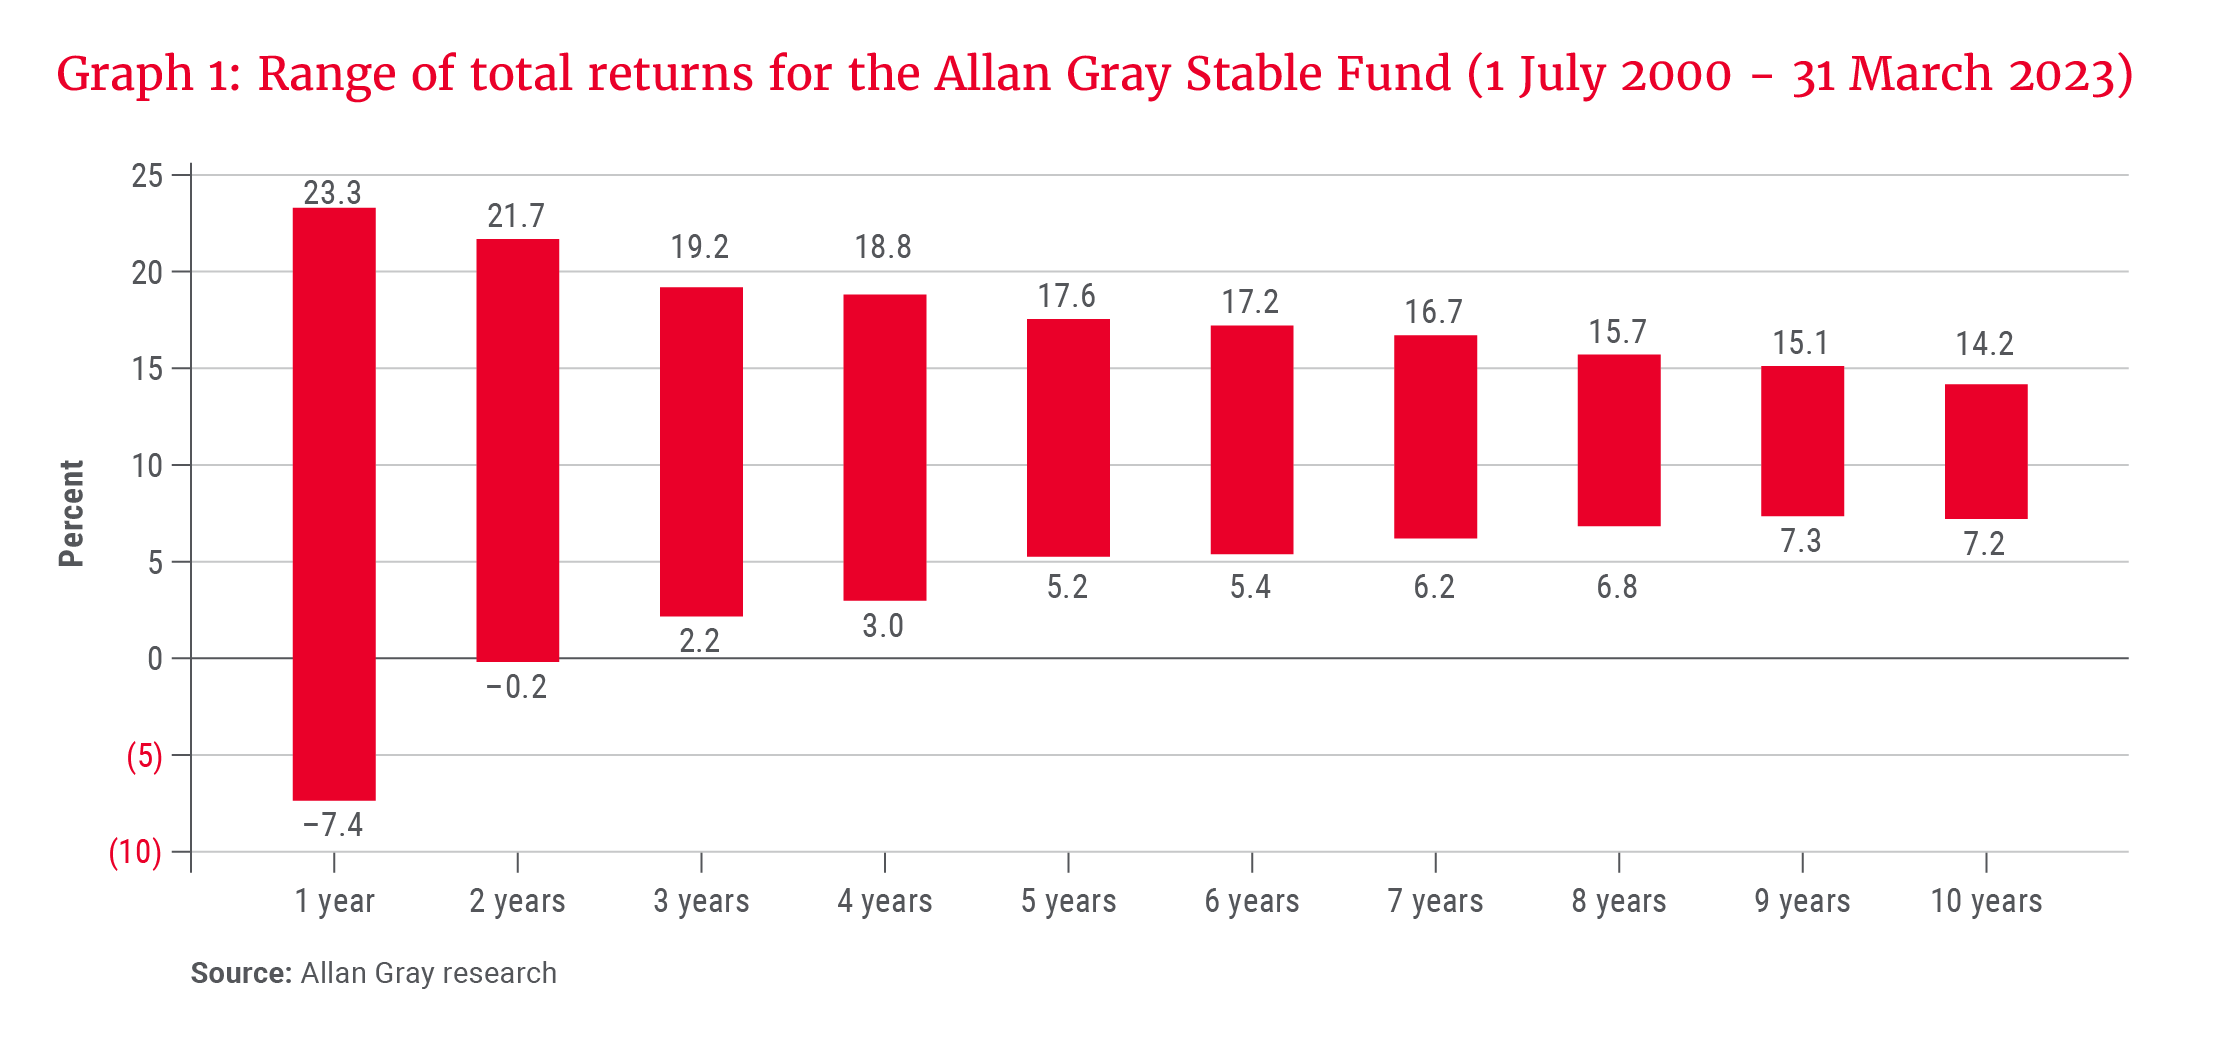 Range of total returns for the AGSF - Allan Gray